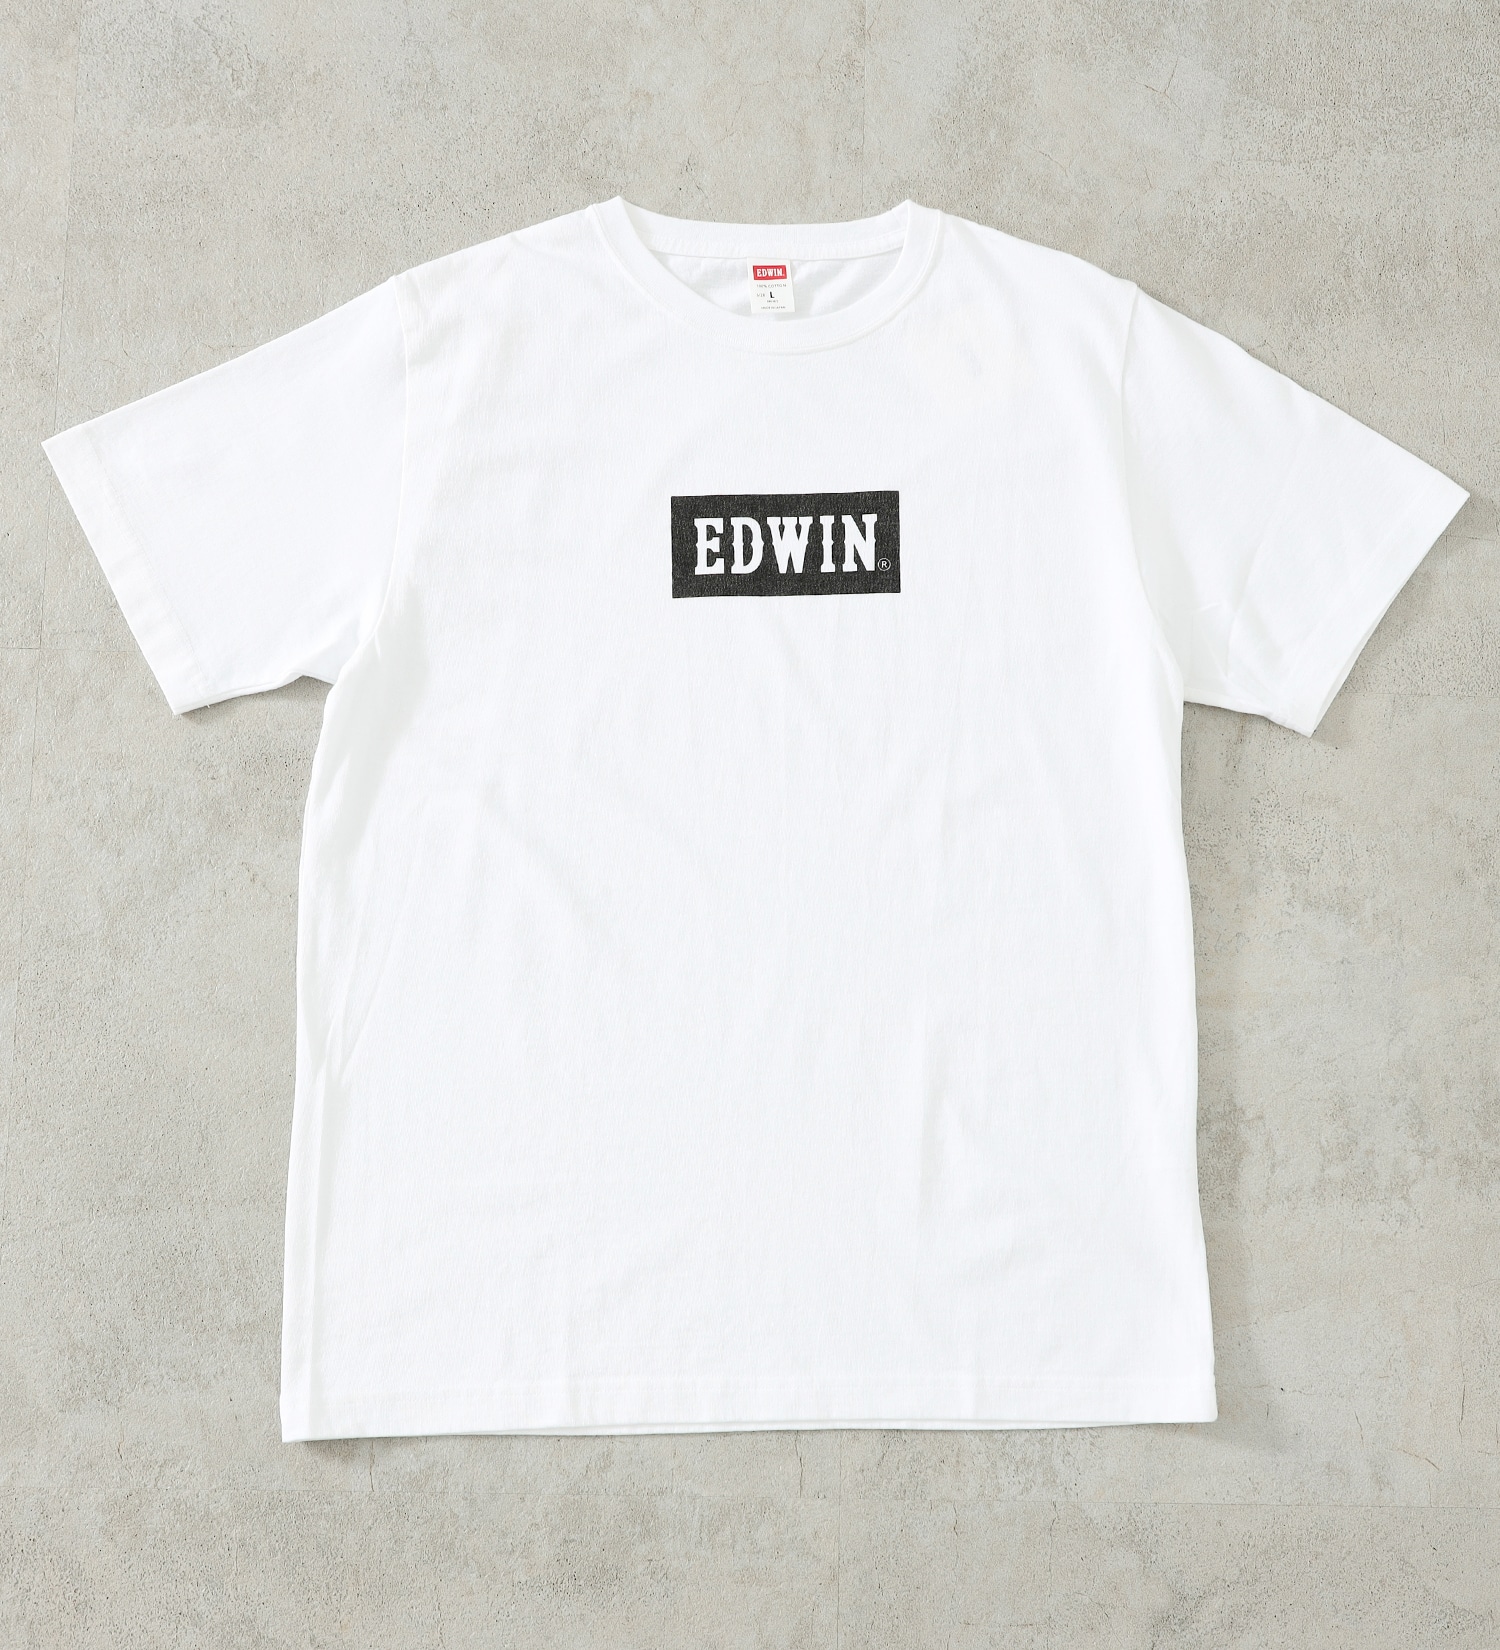 EDWIN(エドウイン)の【サマーセール】【コンセプトショップ限定】EDWIN LOGO TEE|トップス/Tシャツ/カットソー/メンズ|ホワイト2